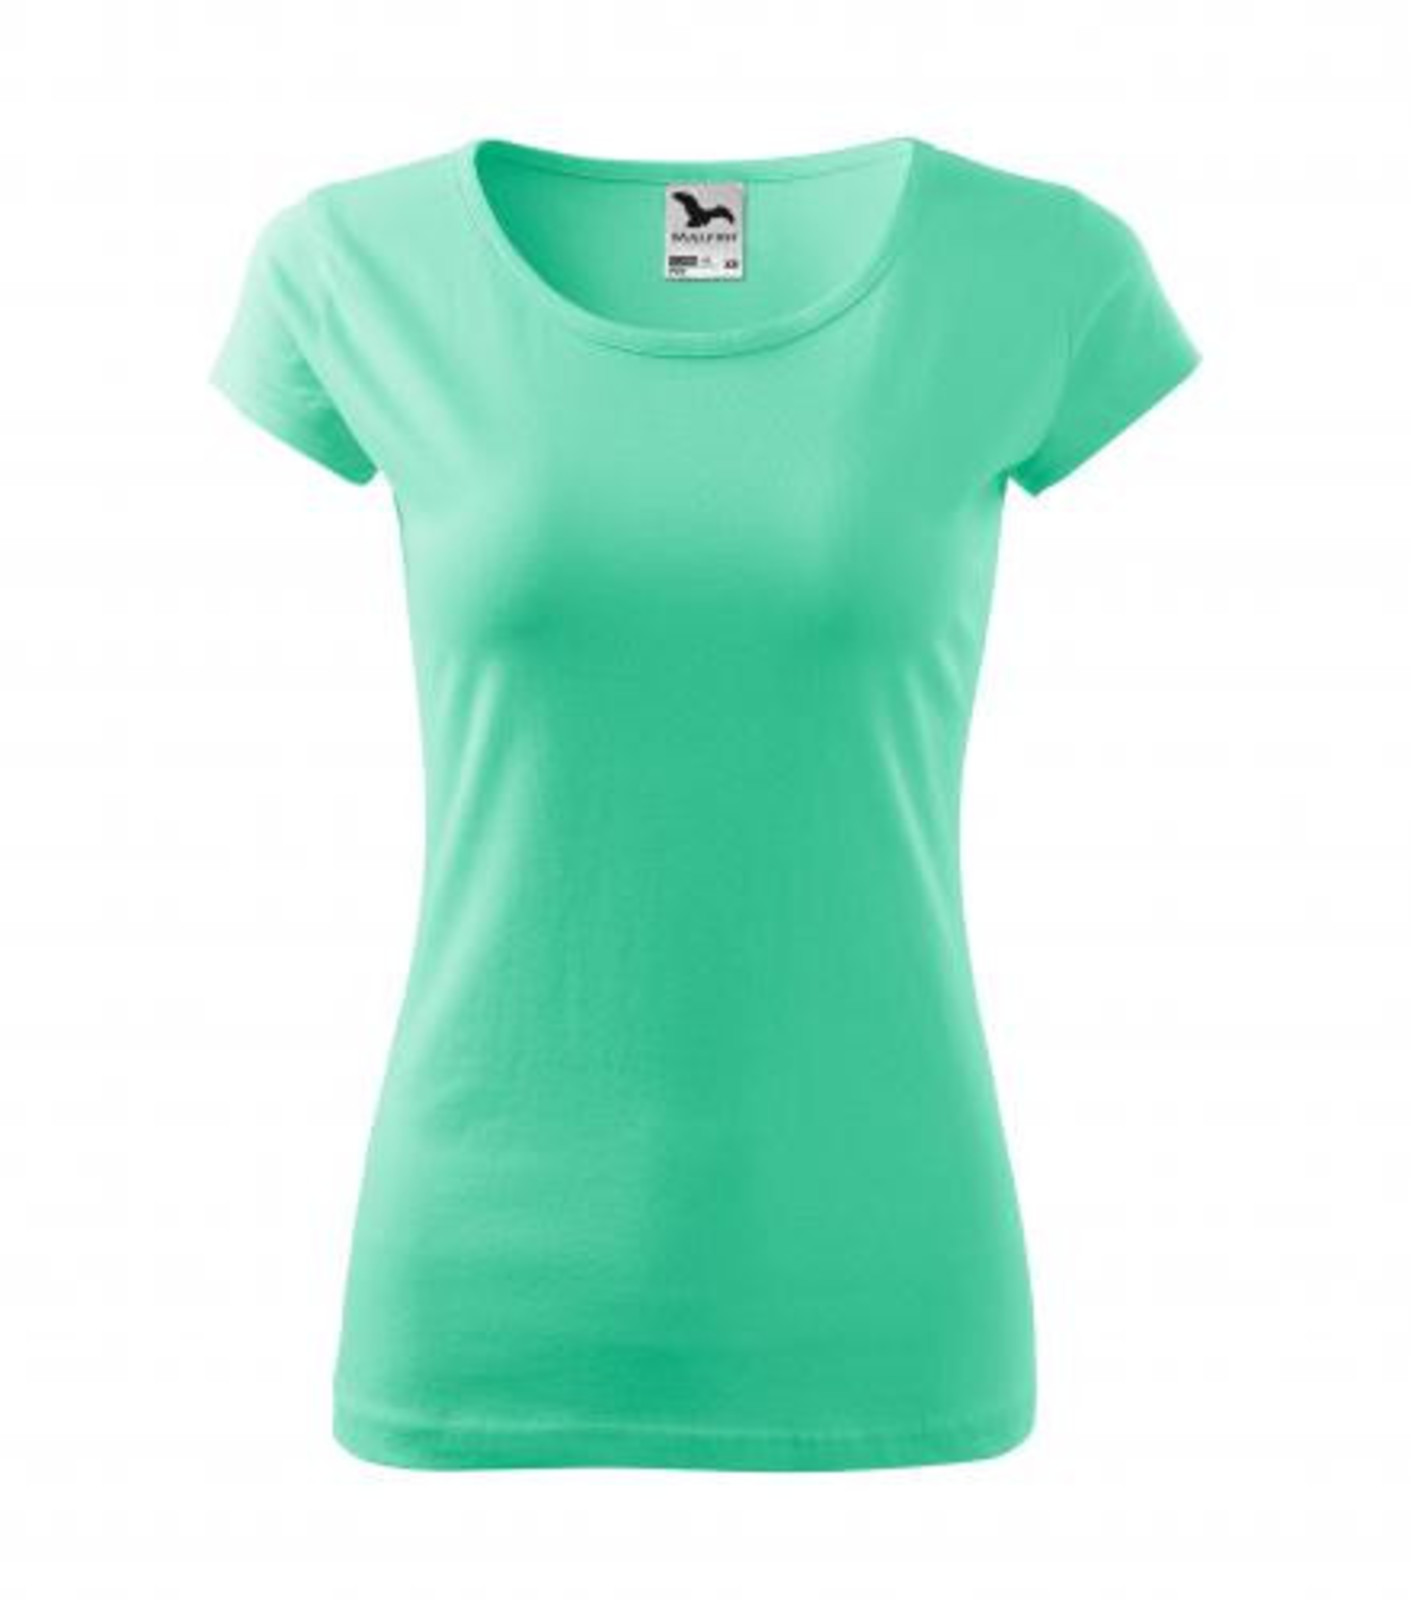 Dámske bavlnené tričko Malfini Pure 122 - veľkosť: XS, farba: mätová